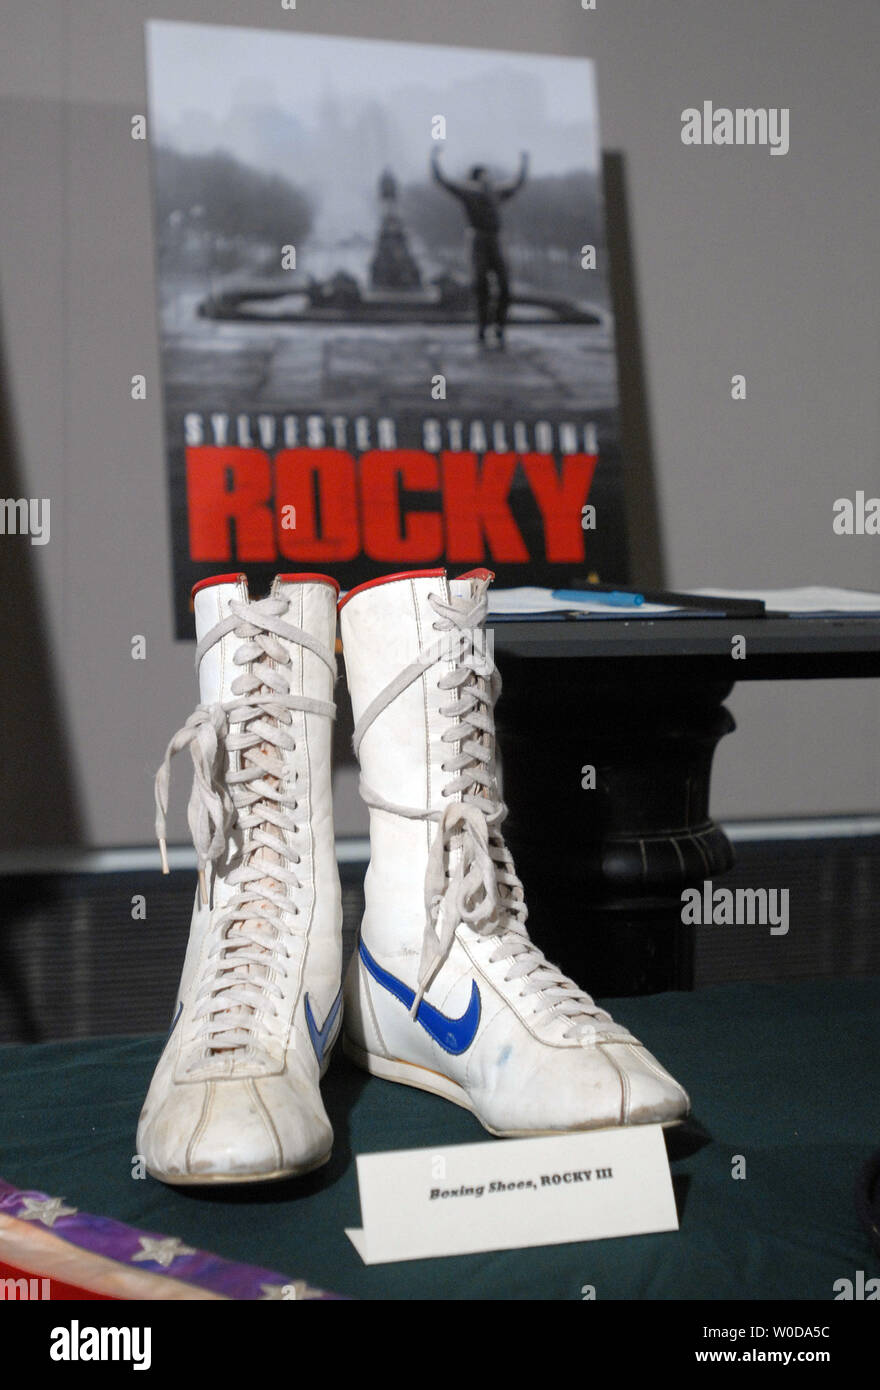 L'acteur et réalisateur Sylvester Stallone a fait don de ses bottes de boxe à partir de "Rocky III" et d'autres objets à partir de l'Academy Award-winning 'Rocky' films pour le Smithsonian National Museum of American History à Washington le 5 décembre 2006. (Photo d'UPI/Roger L. Wollenberg) Banque D'Images